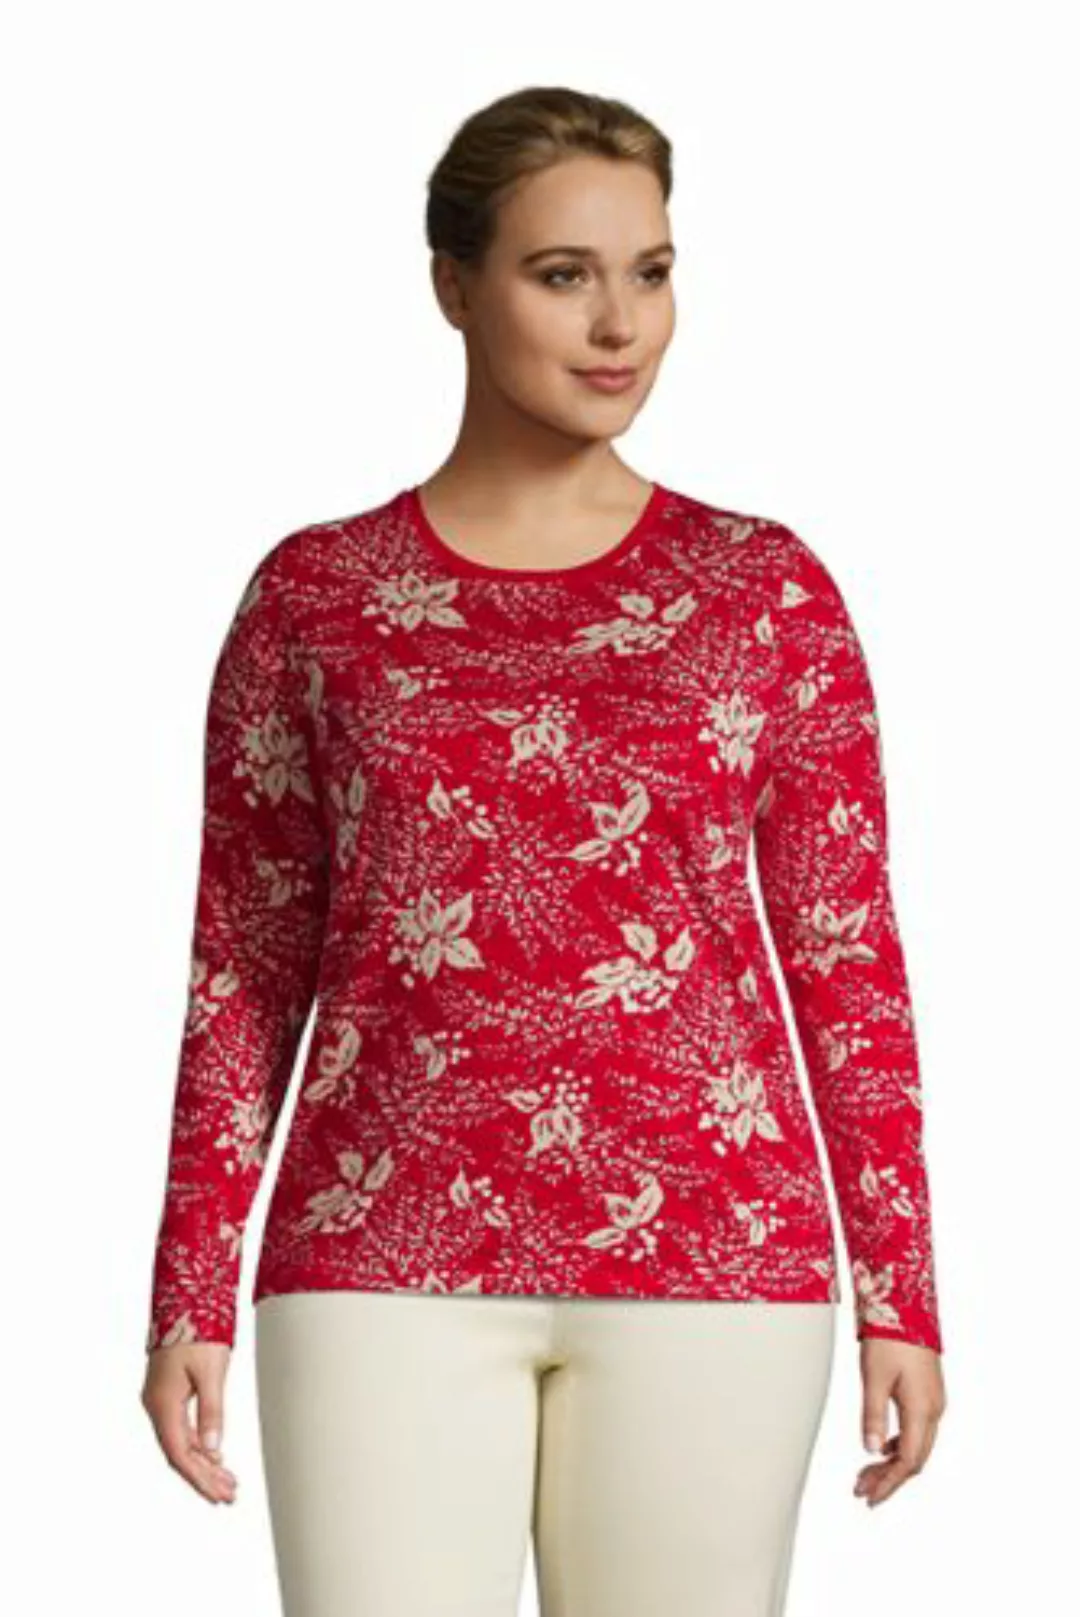 Supima-Shirt, Langarm in großen Größen, Damen, Größe: 52-54 Plusgrößen, Rot günstig online kaufen